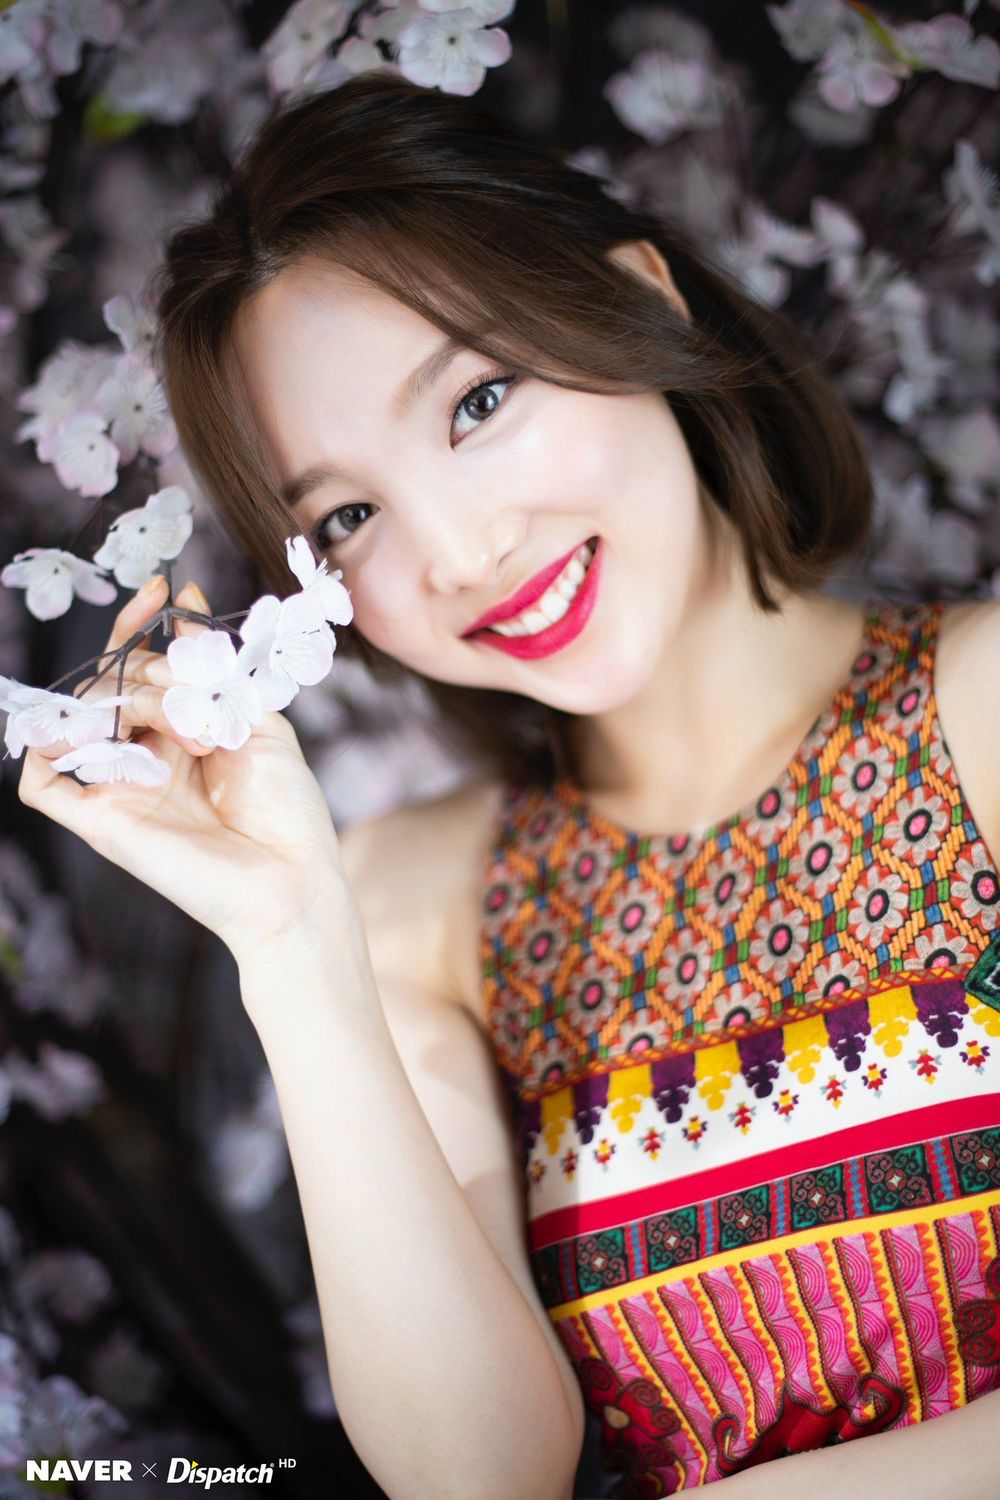  
Nayeon nổi tiếng với nhan sắc xinh đẹp, thần thái tươi sáng thu hút. Ảnh: Naver